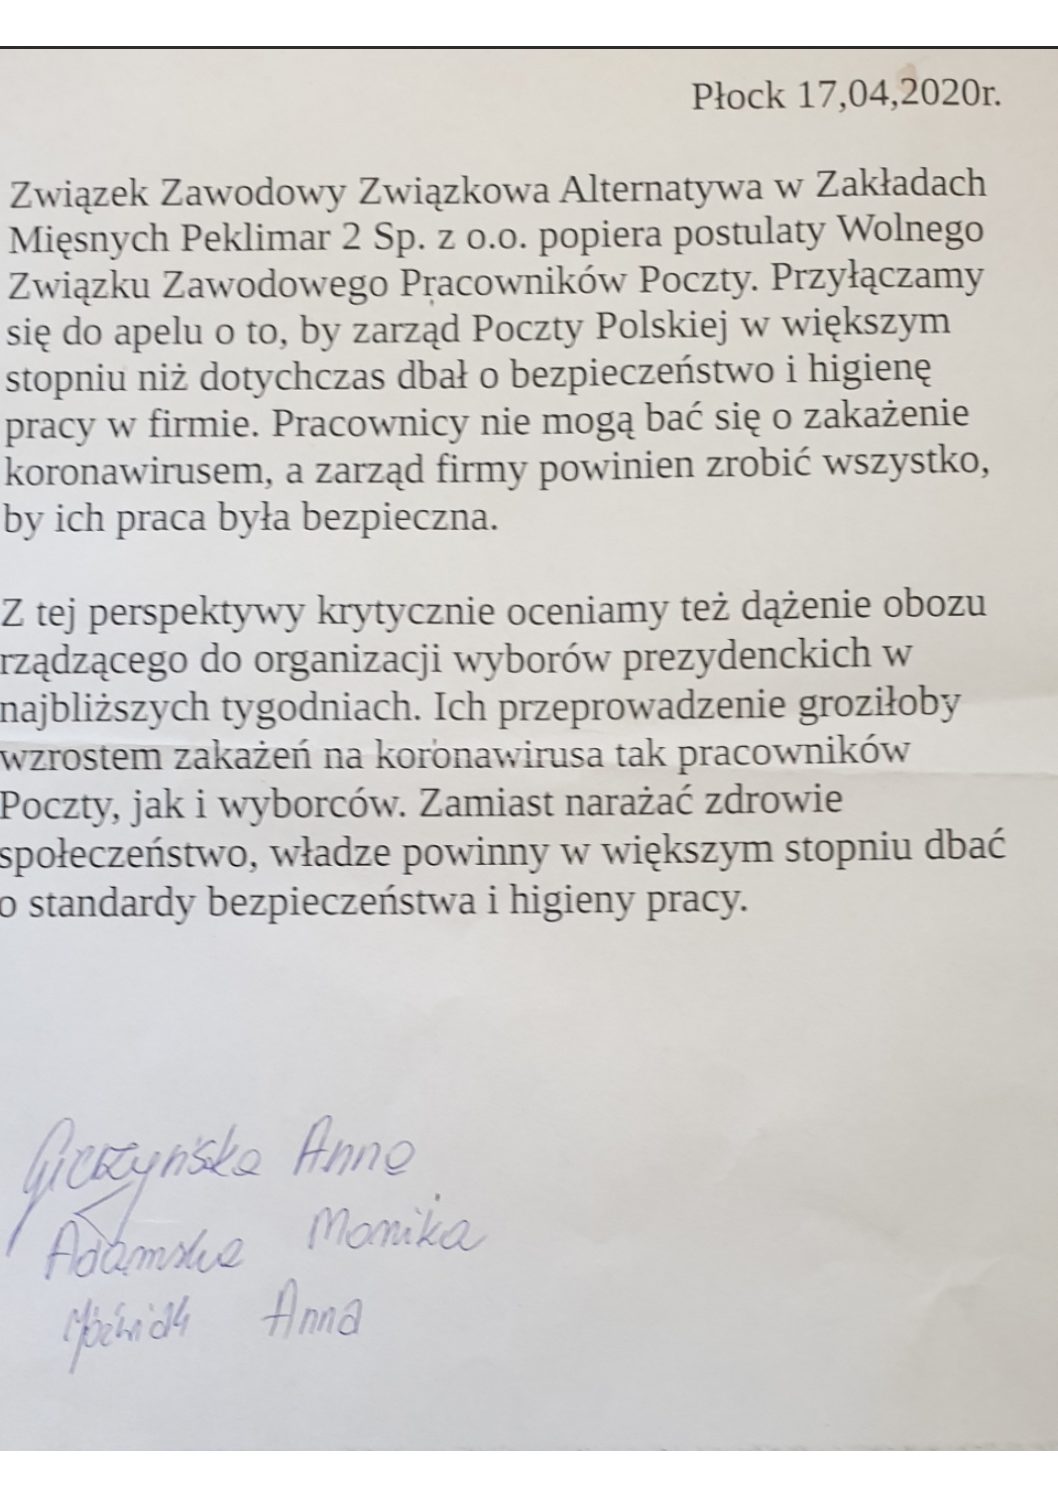 Związkowa Alternatywa w Zakładach Mięsnych Peklimar 2 Sp. z o.o. solidaryzuje się z pocztowcami!